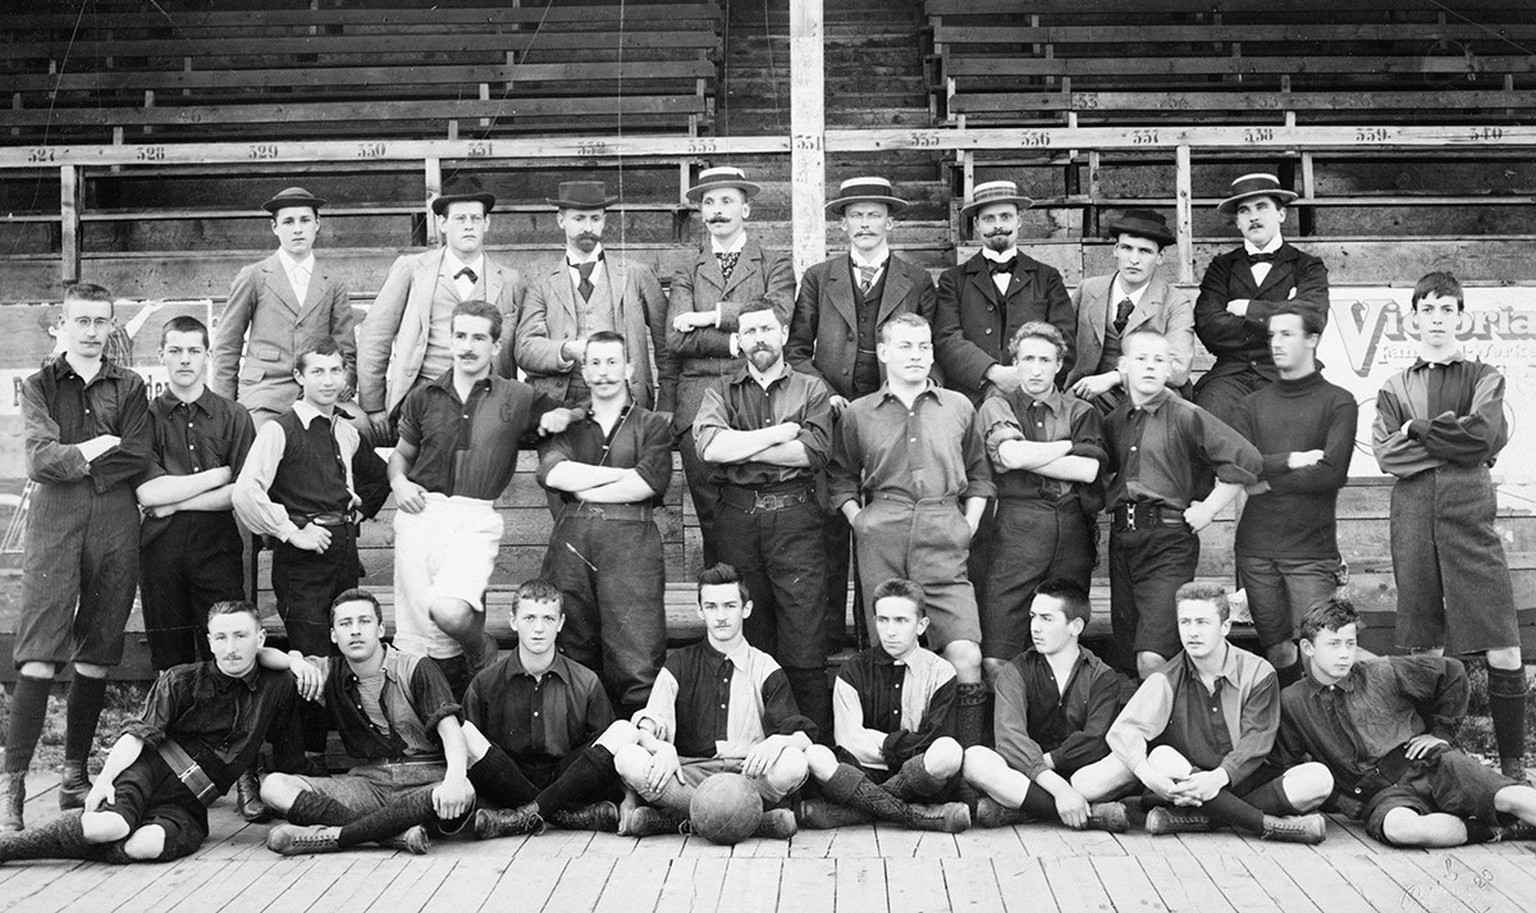 Mannschaftsbild des F. C. Basel von 1898 mit John Tollmann (mittlere Reihe, Sechster von links).
https://fcb-museum.ch/netzwerk/stiftung-ehrentor